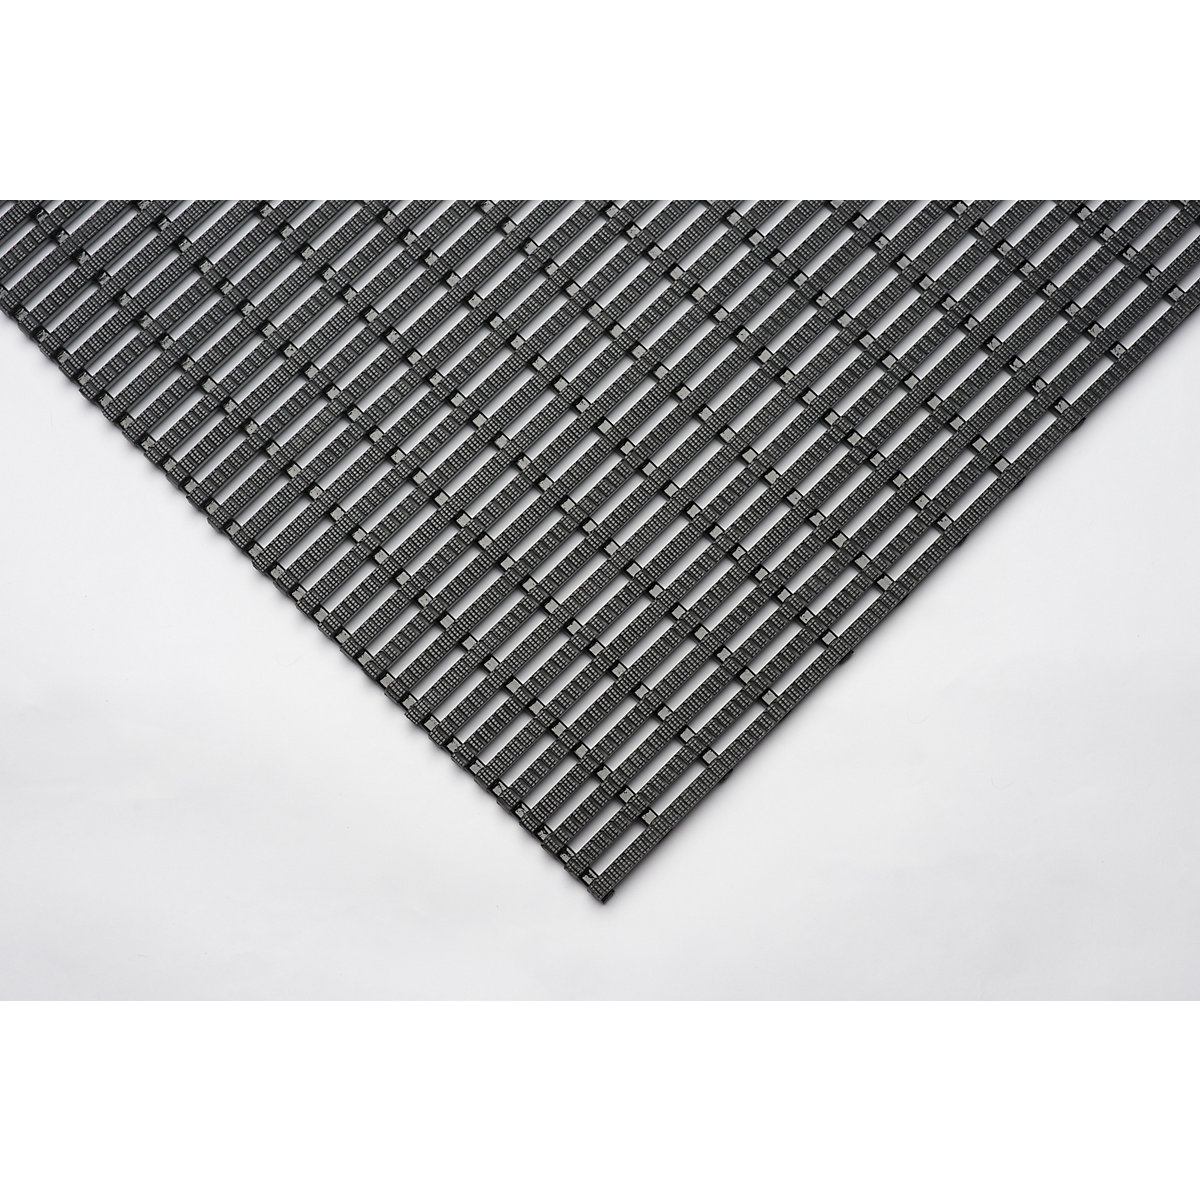 Industrijska prostirka, protuklizna, rola od 10 m, u crnoj boji, širina 600 mm-1